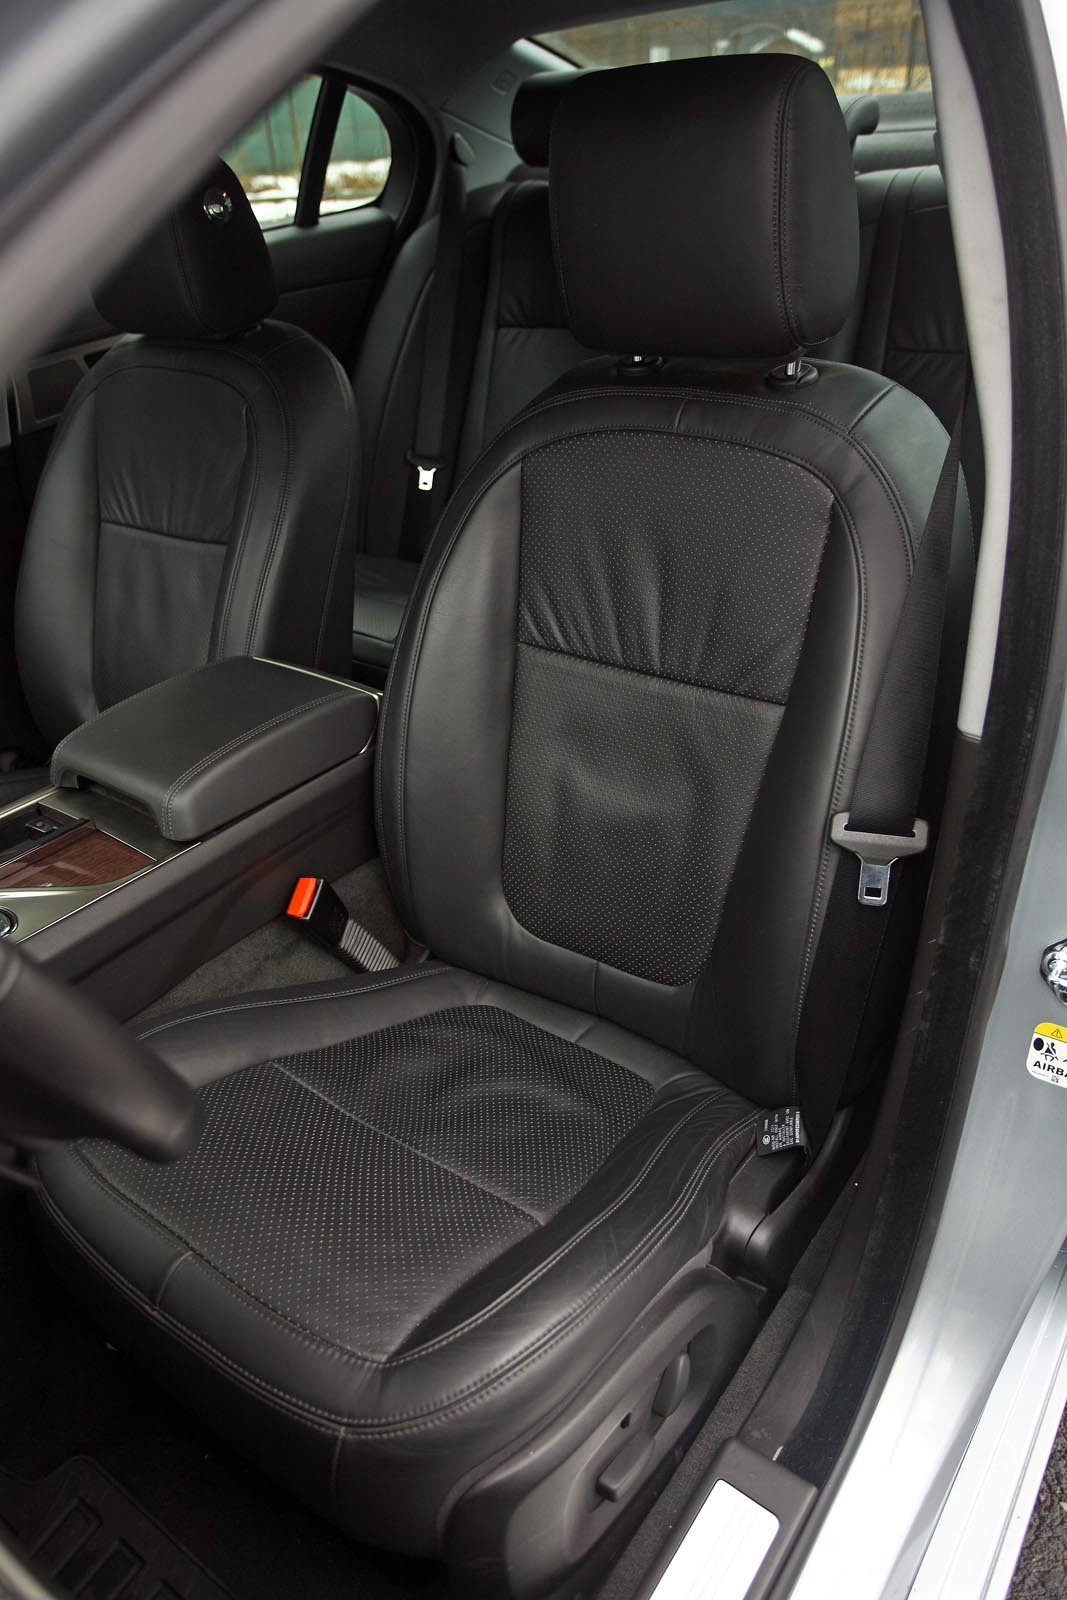 Jaguar XF are in fata scaune sportive, dar in spate spatiul este limitat pe bancheta